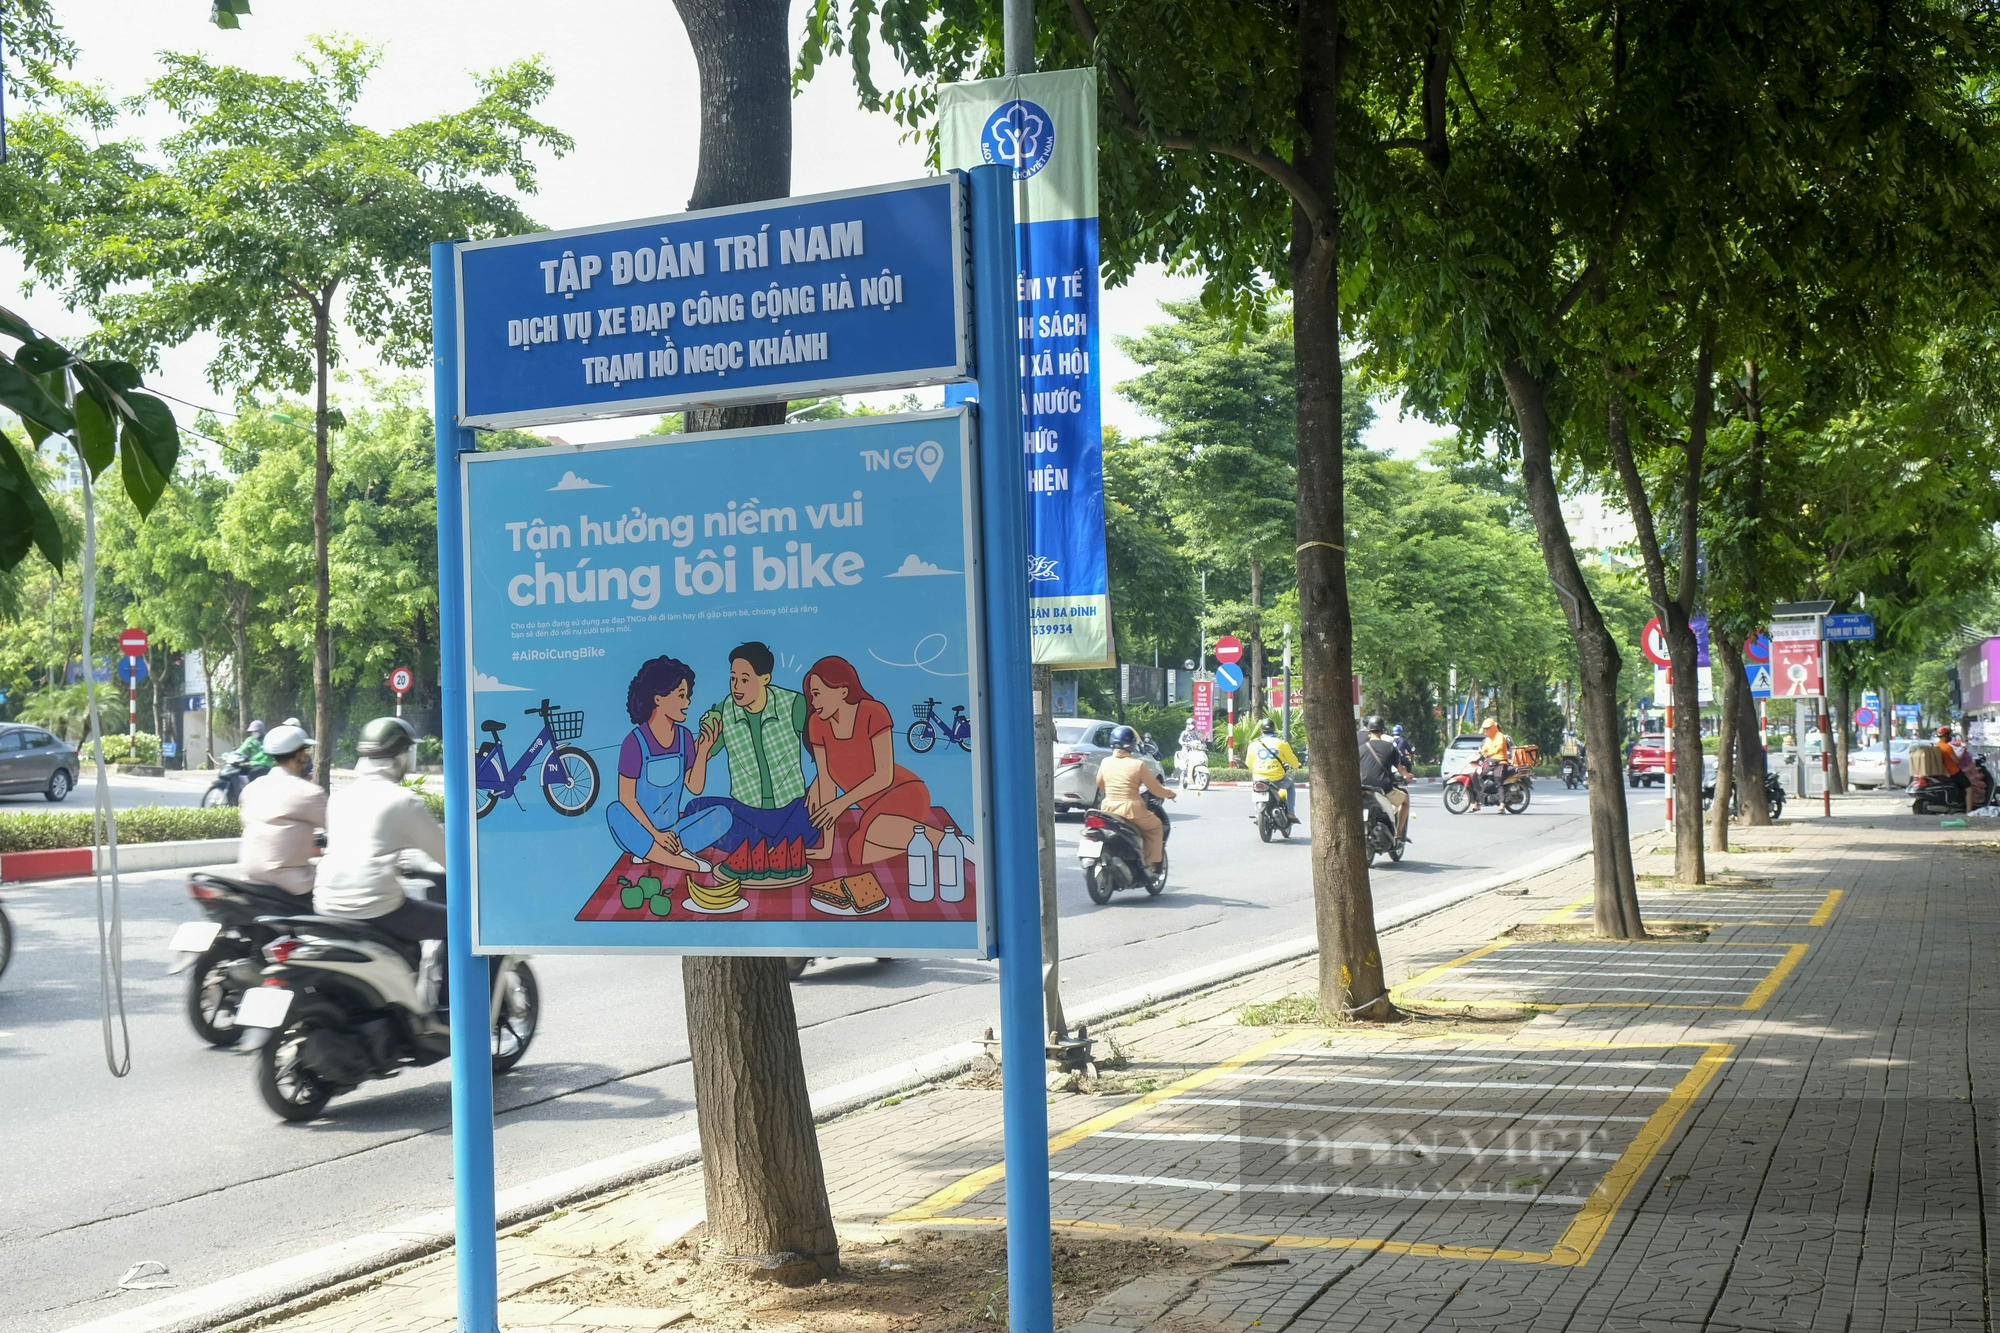 Dự án trạm xe đạp công cộng tại Hà Nội “lỡ hẹn”, chưa thể đưa vào hoạt động - Ảnh 2.